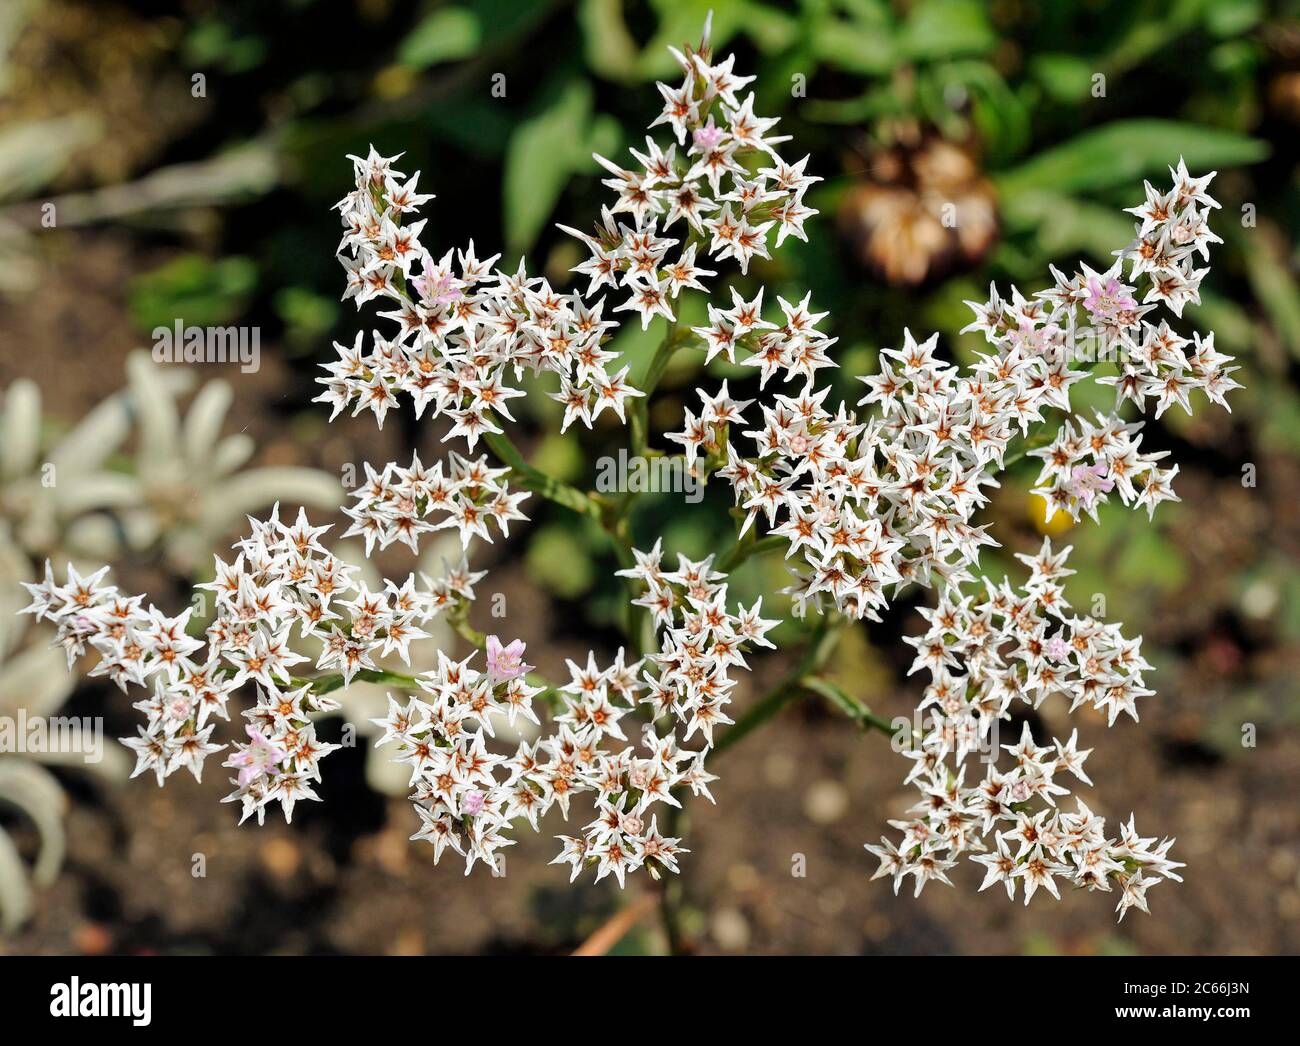 Le acumelle fiorite di Goniolimon tataricum in estate, perenni autoctone delle steppe del Sud-Est Europa, Russia e Asia, possono essere utilizzate sia come fiori tagliati che secchi Foto Stock